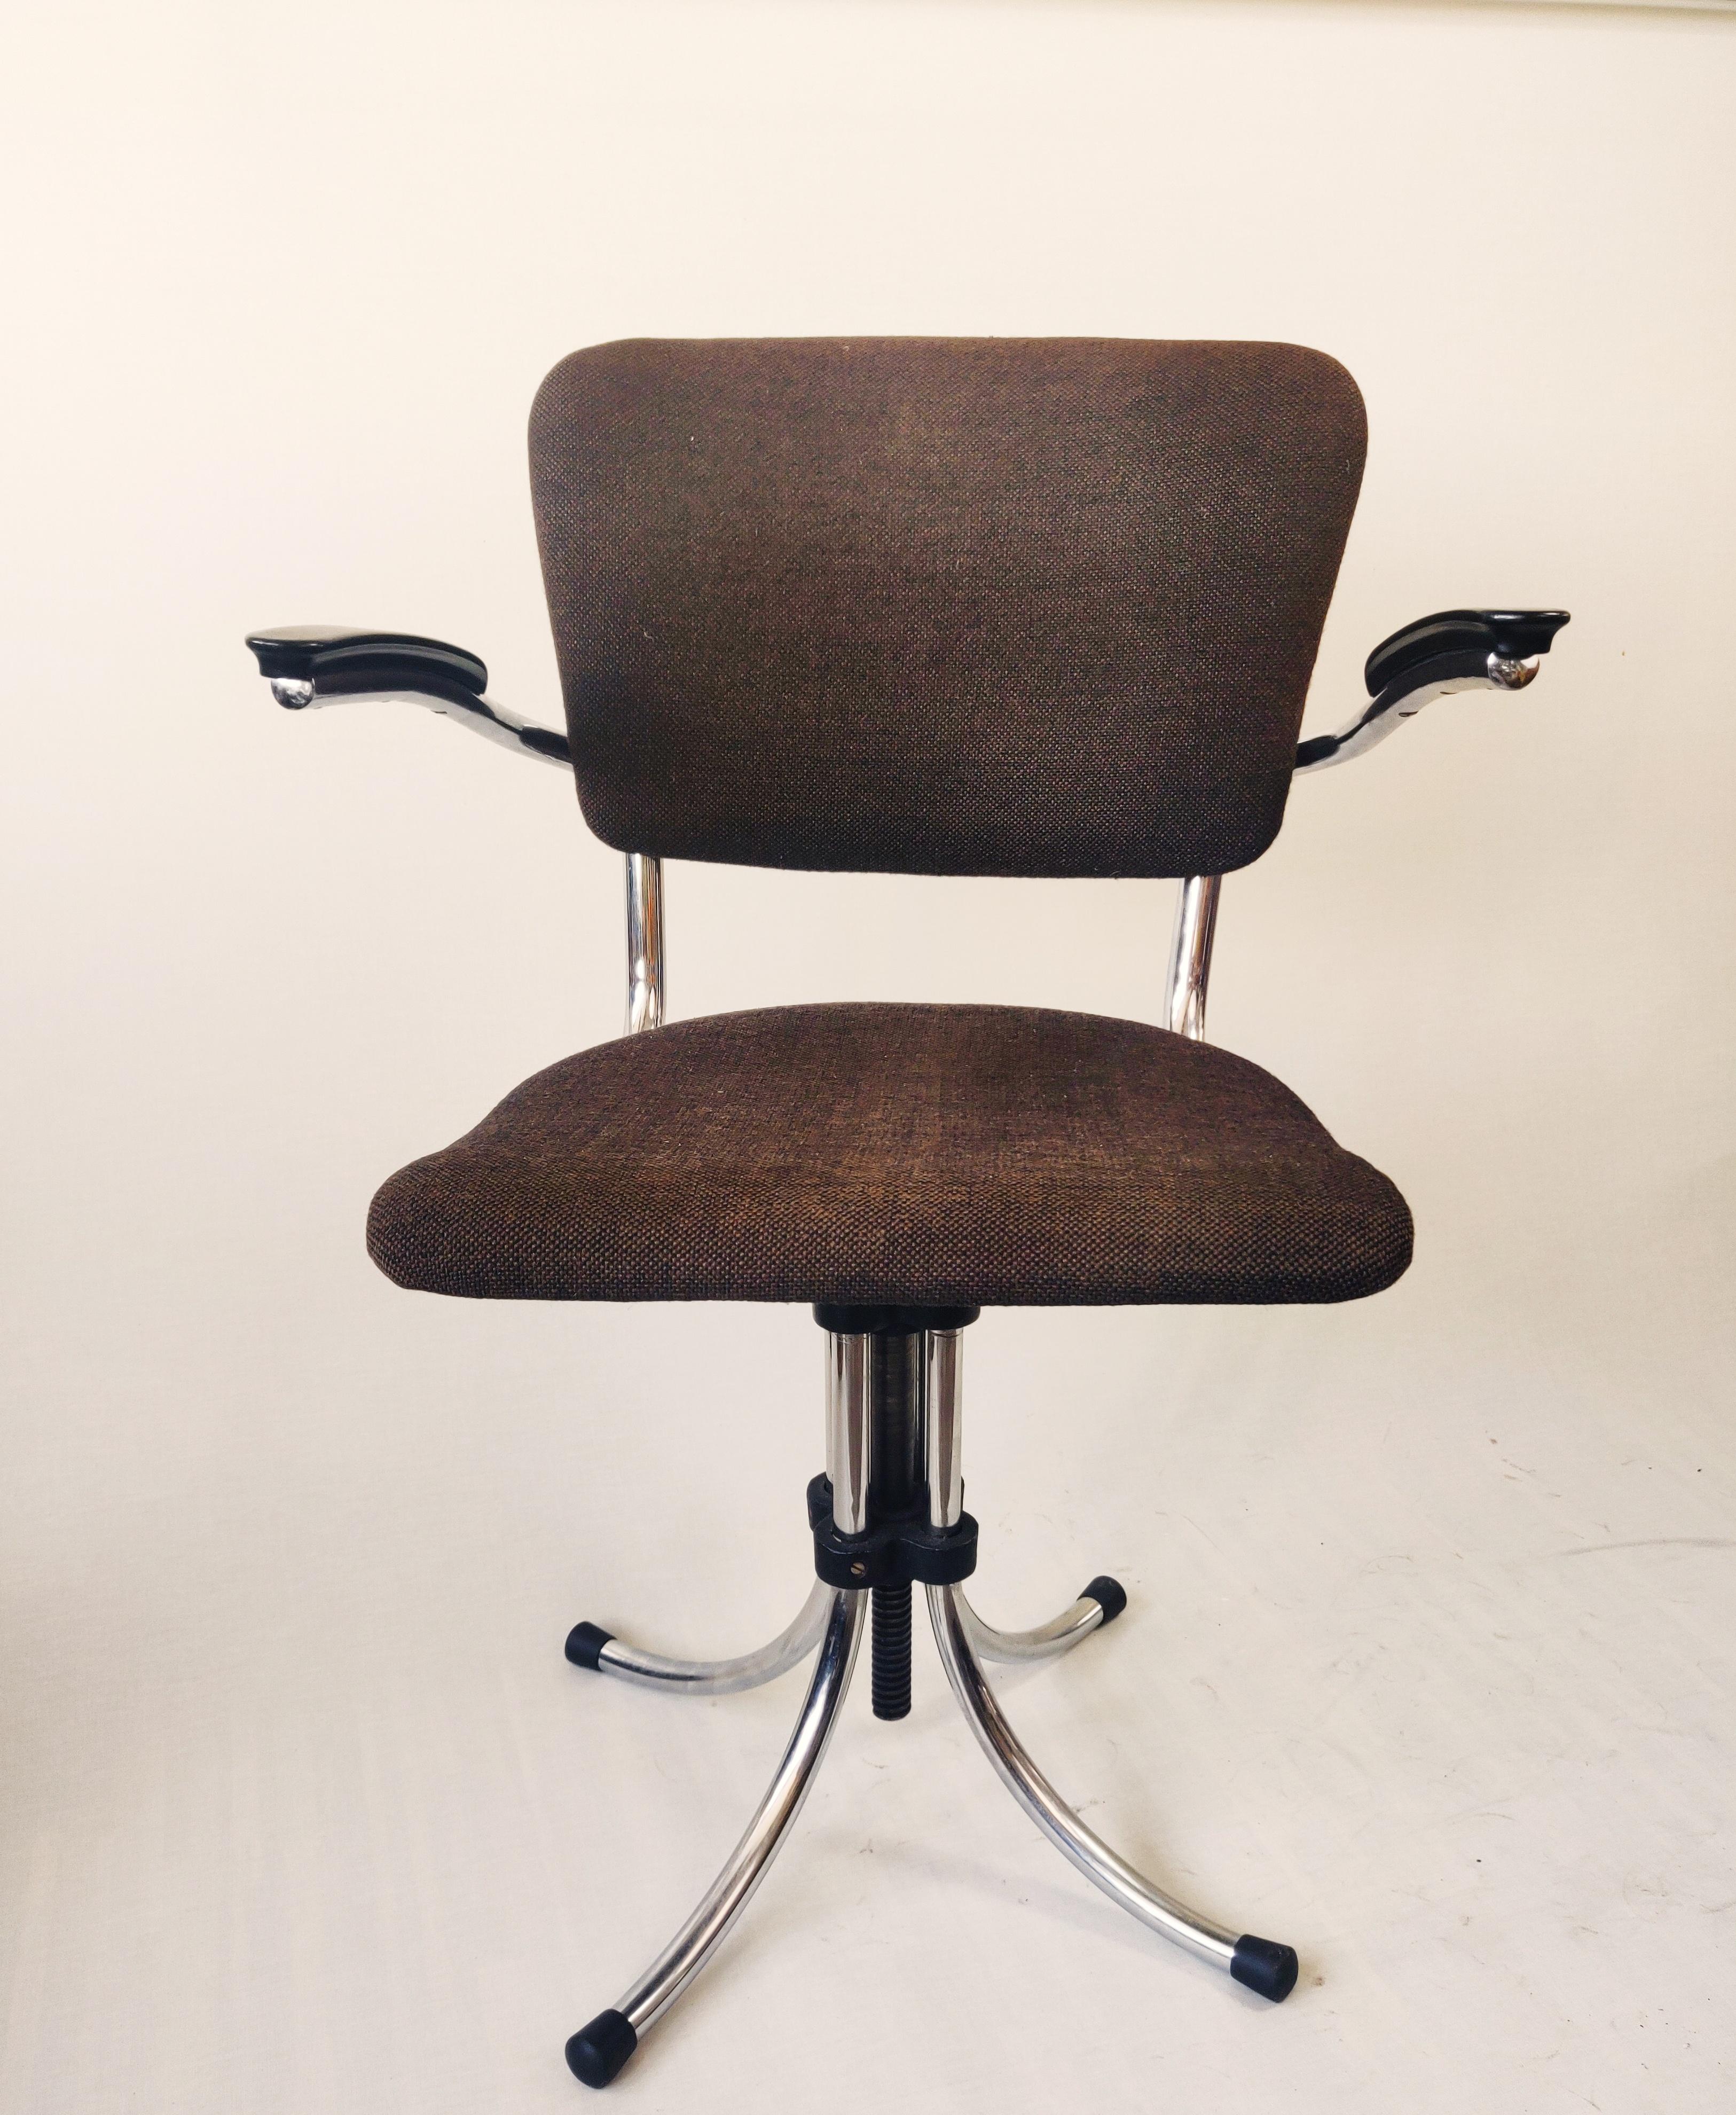 Rare chaise de bureau de Fana Metaal Rotterdam, conçue par Paul Schuitema dans les années 1960. La chaise a une base tubulaire, des accoudoirs en bakélite et un dossier et une assise en tissu marron. ... Patine sur le cadre tubulaire. La chaise est